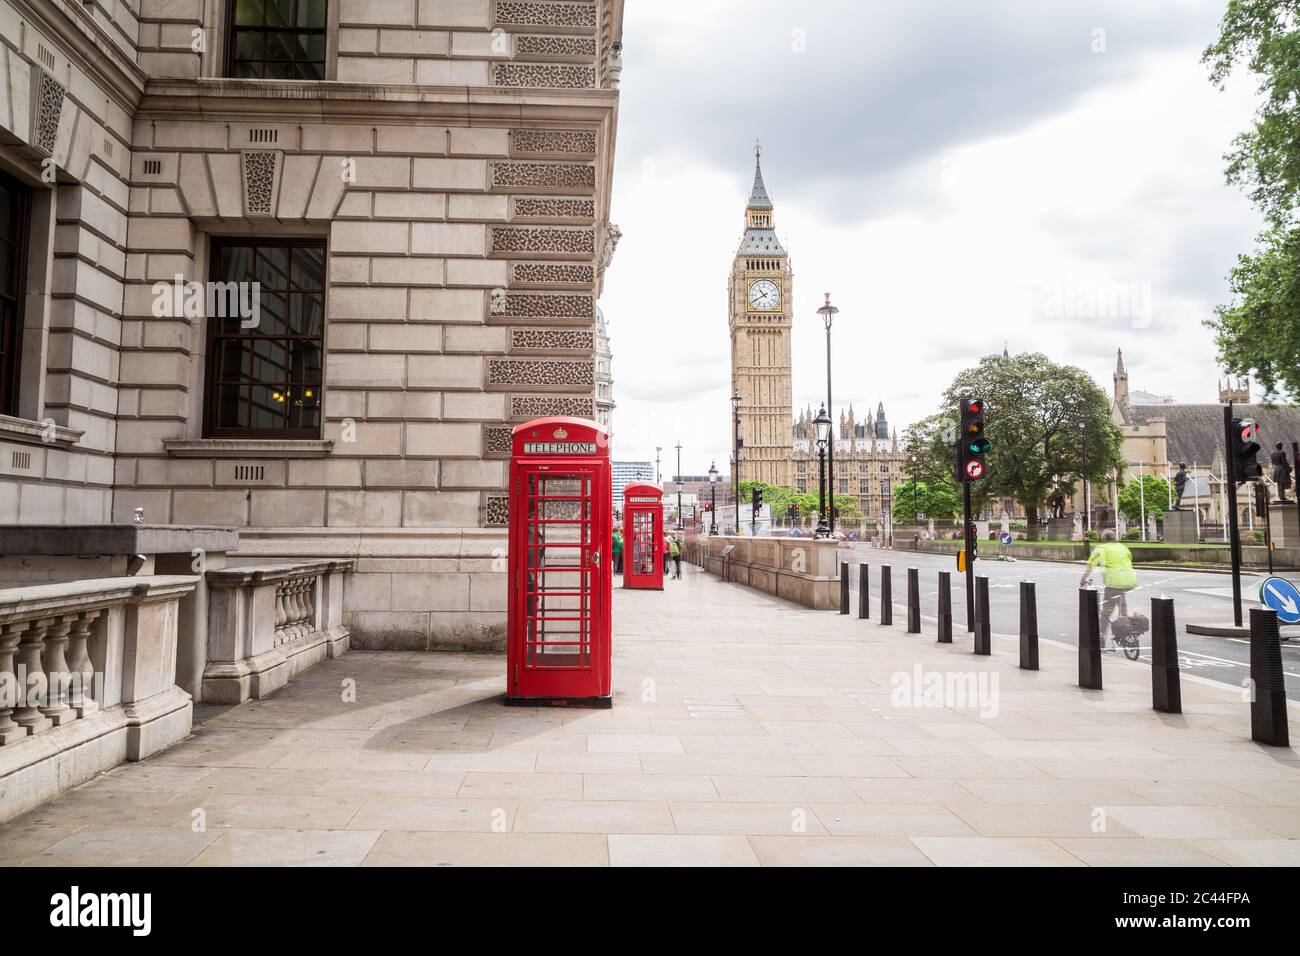 LONDRES, Royaume-Uni - 28 JUIN 2016 : une vue vers Big Ben et Elizabeth Tower pendant la journée. Les boîtes de téléphone et les personnes rouges sont visibles au premier plan. Banque D'Images